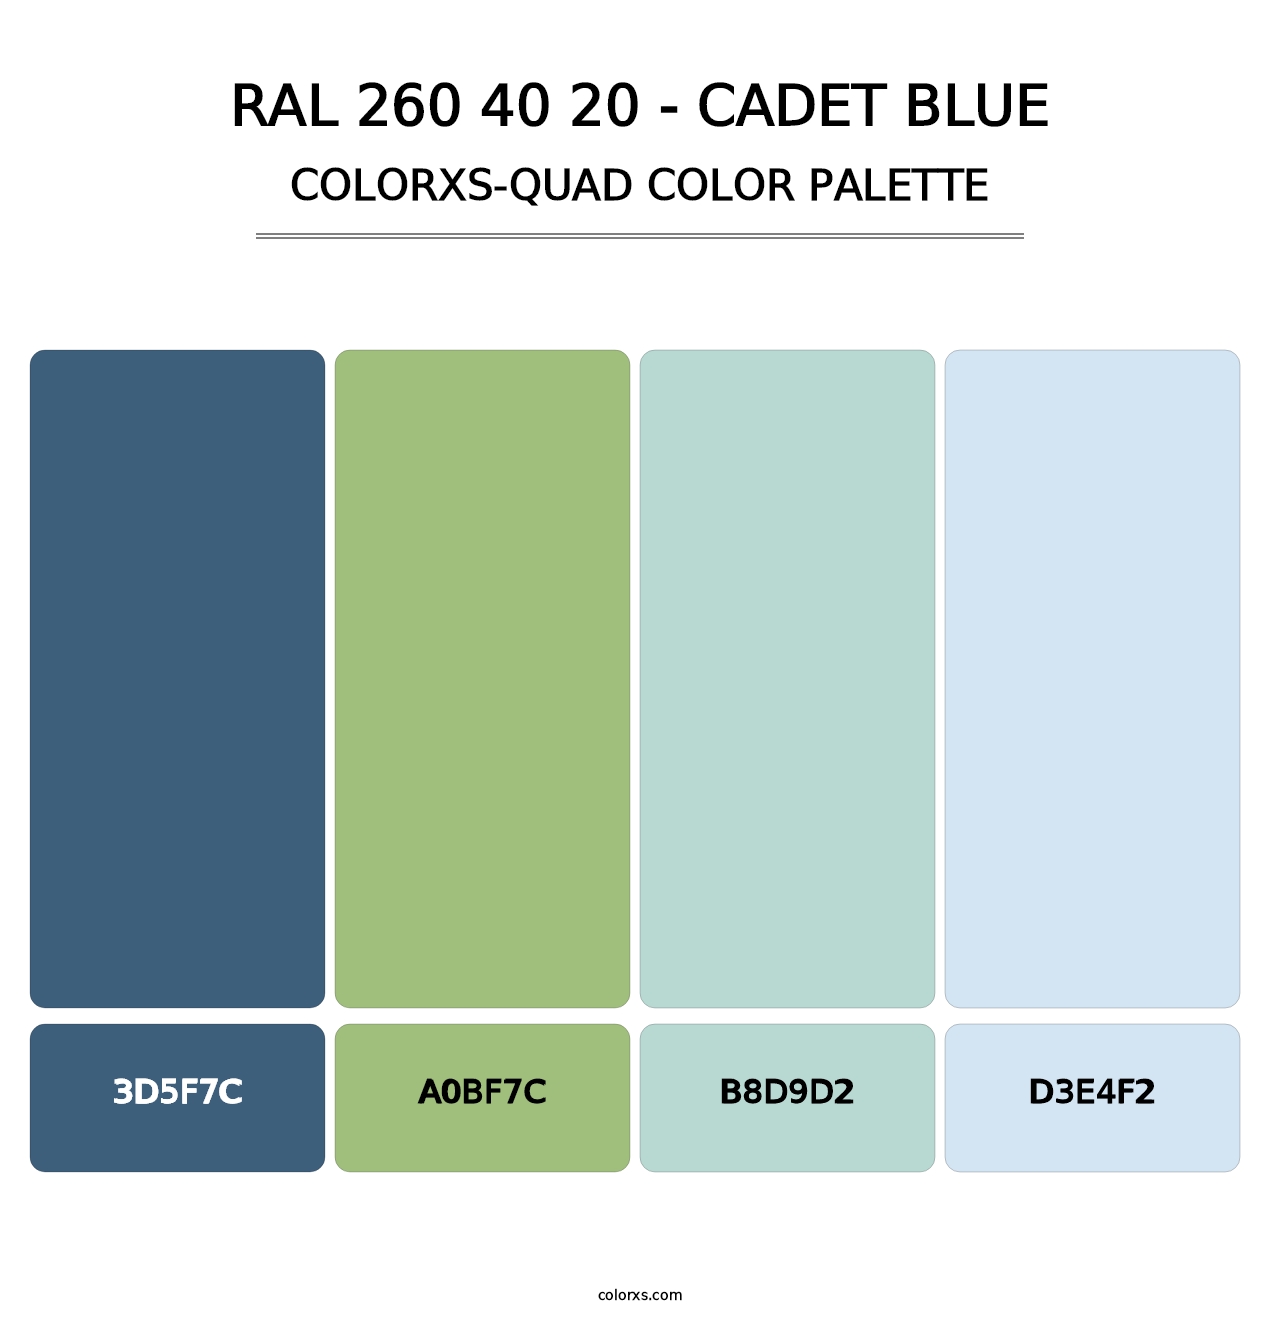 RAL 260 40 20 - Cadet Blue - Colorxs Quad Palette